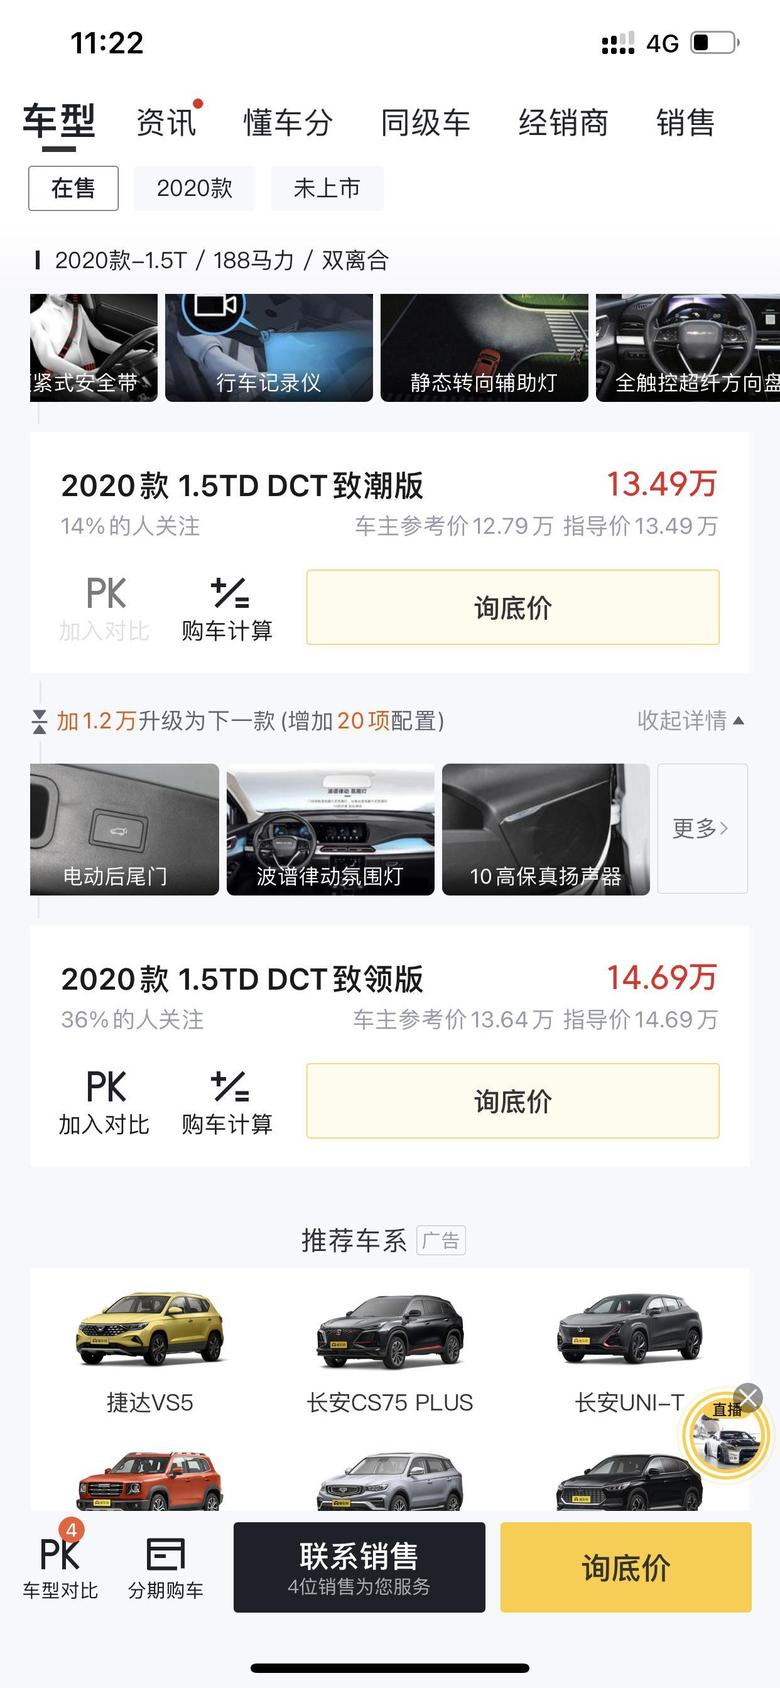 你好，北京X7致潮版商家报价13.49万。现在能谈到裸车价多少。谢谢！